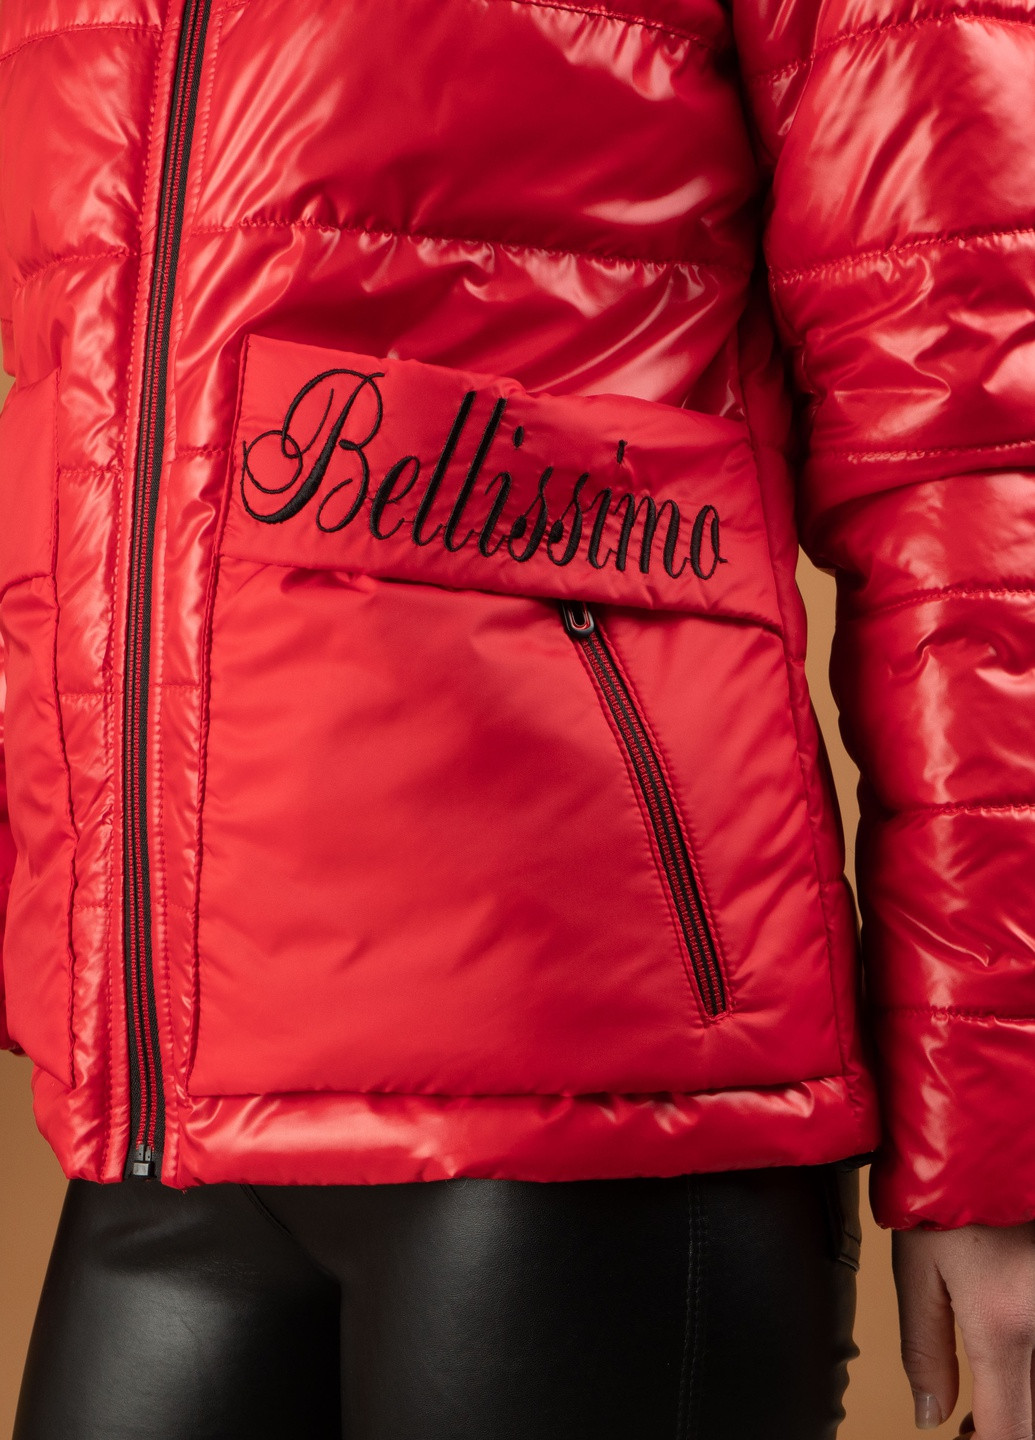 Красная демисезонная осенние женские куртки от производителя SK